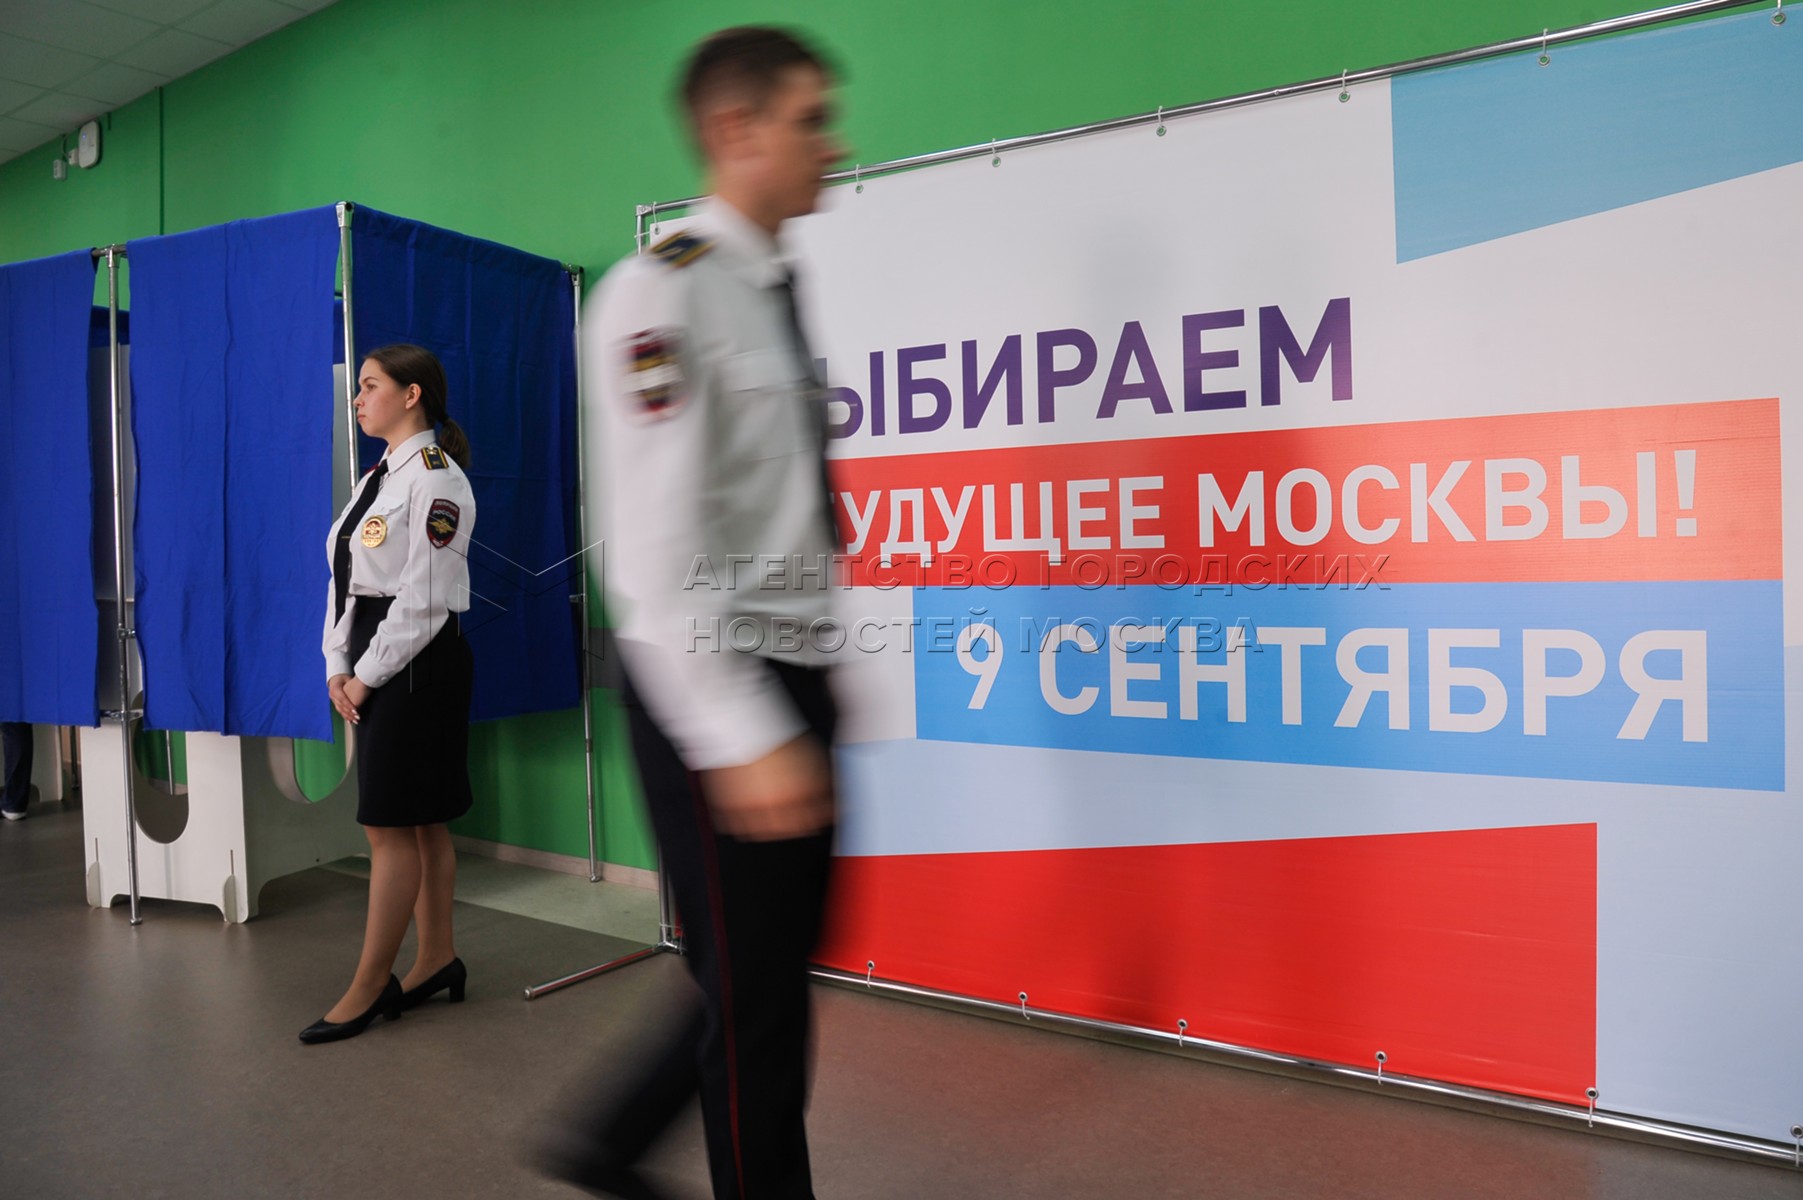 Акция полдень на выборах. Явка на выборы мэра Москвы.